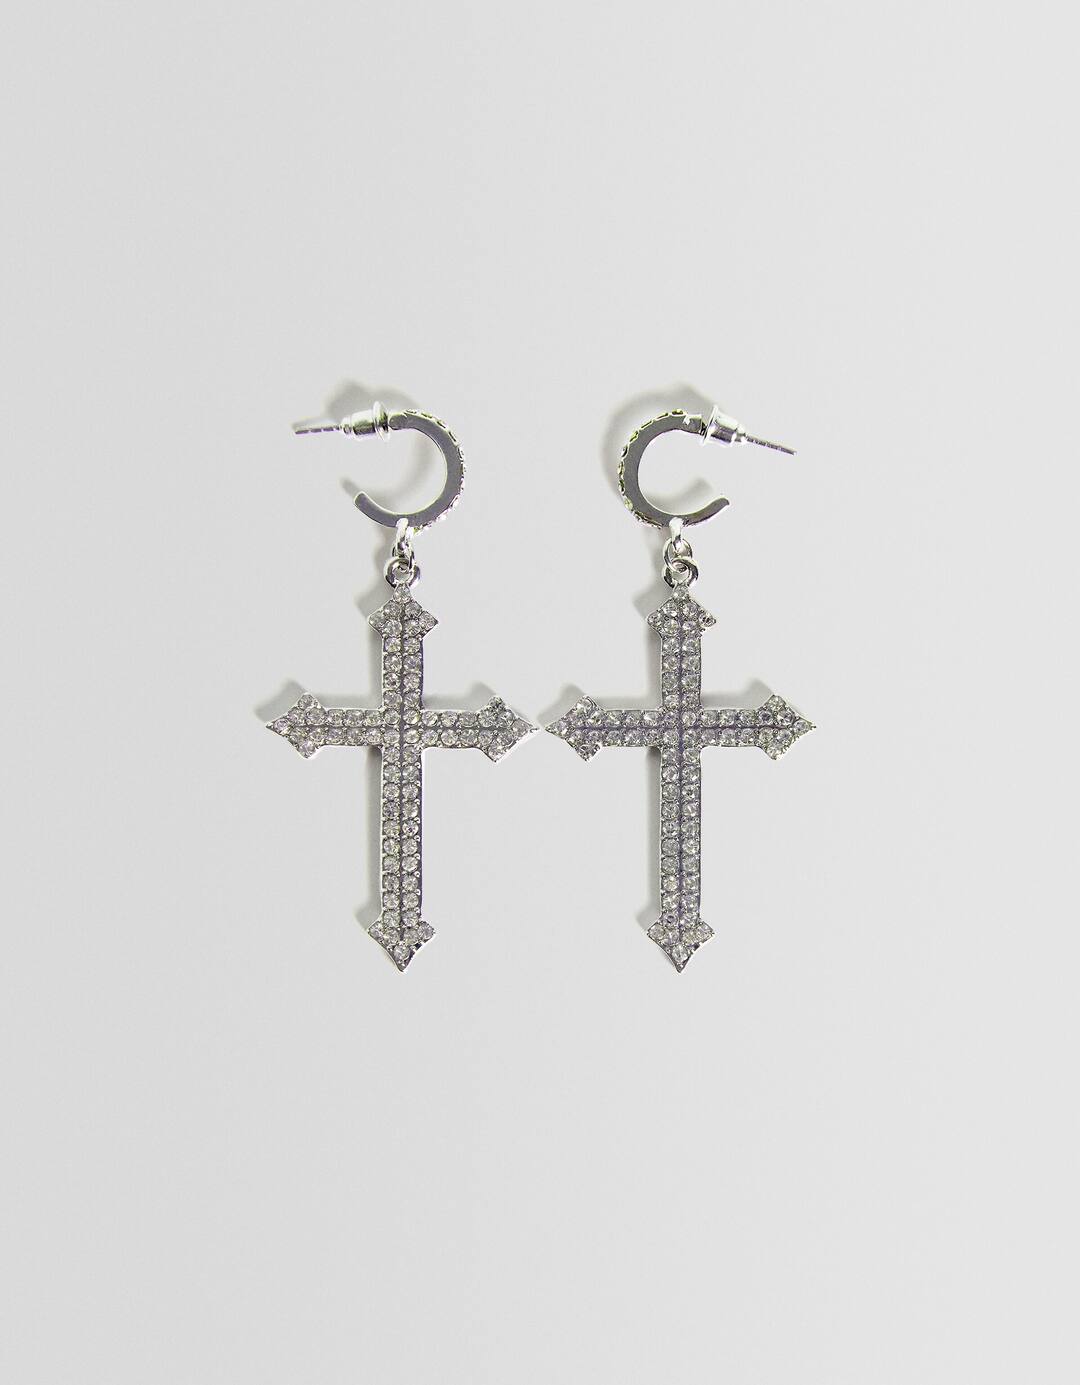 Rhinestone cross earrings